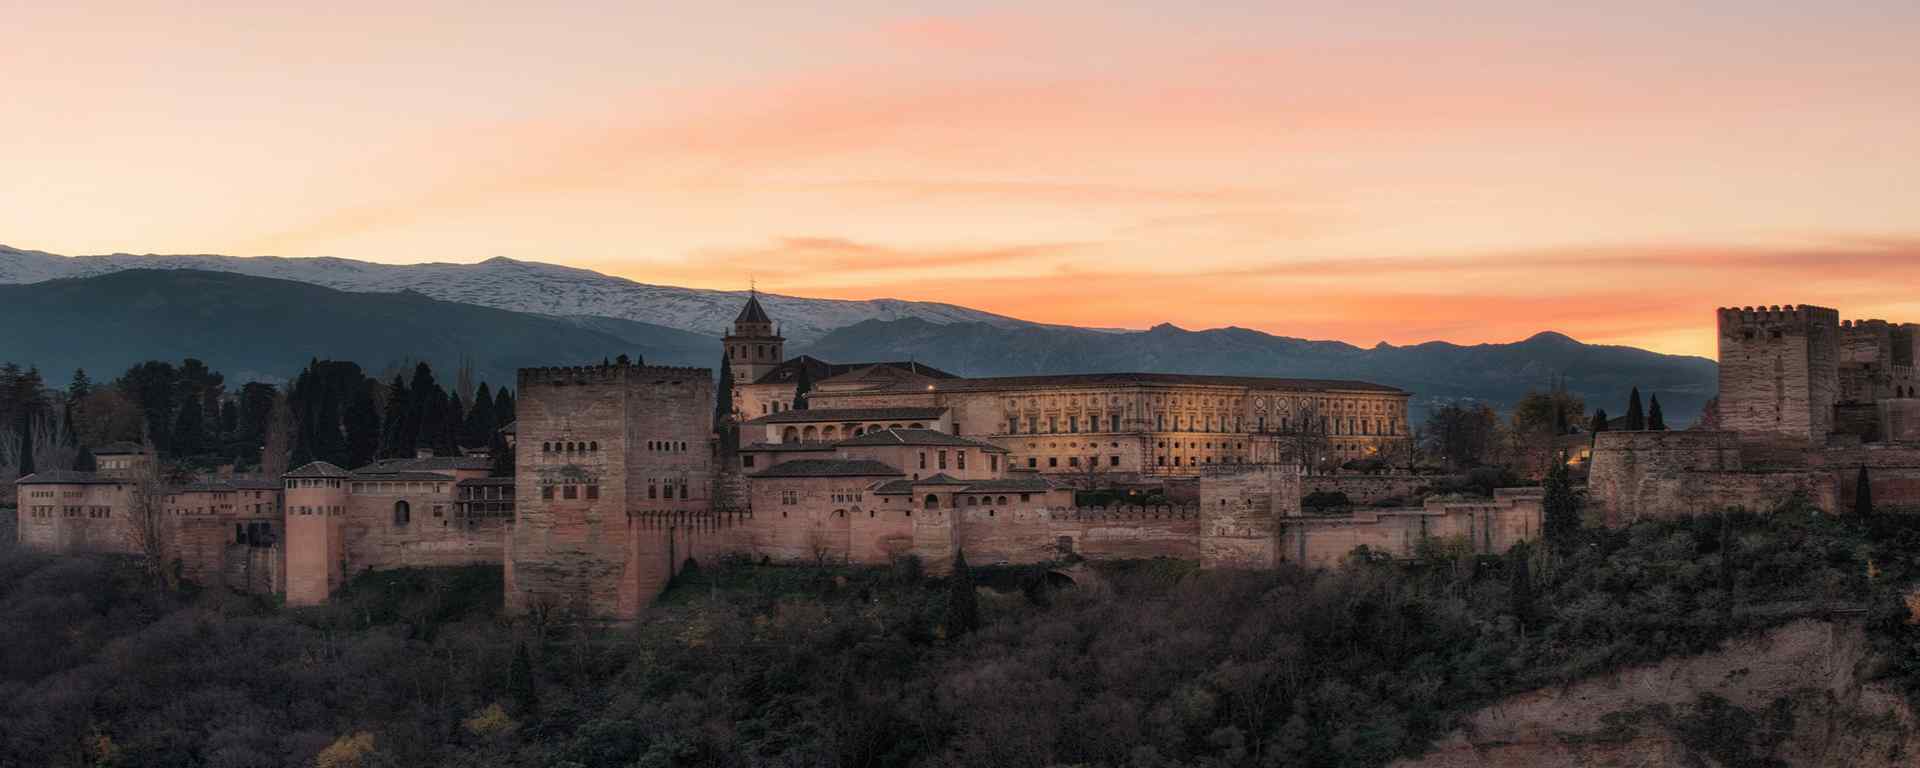 西班牙_西班牙旅游_西班牙斗牛_西班牙城堡_西班牙风景壁纸